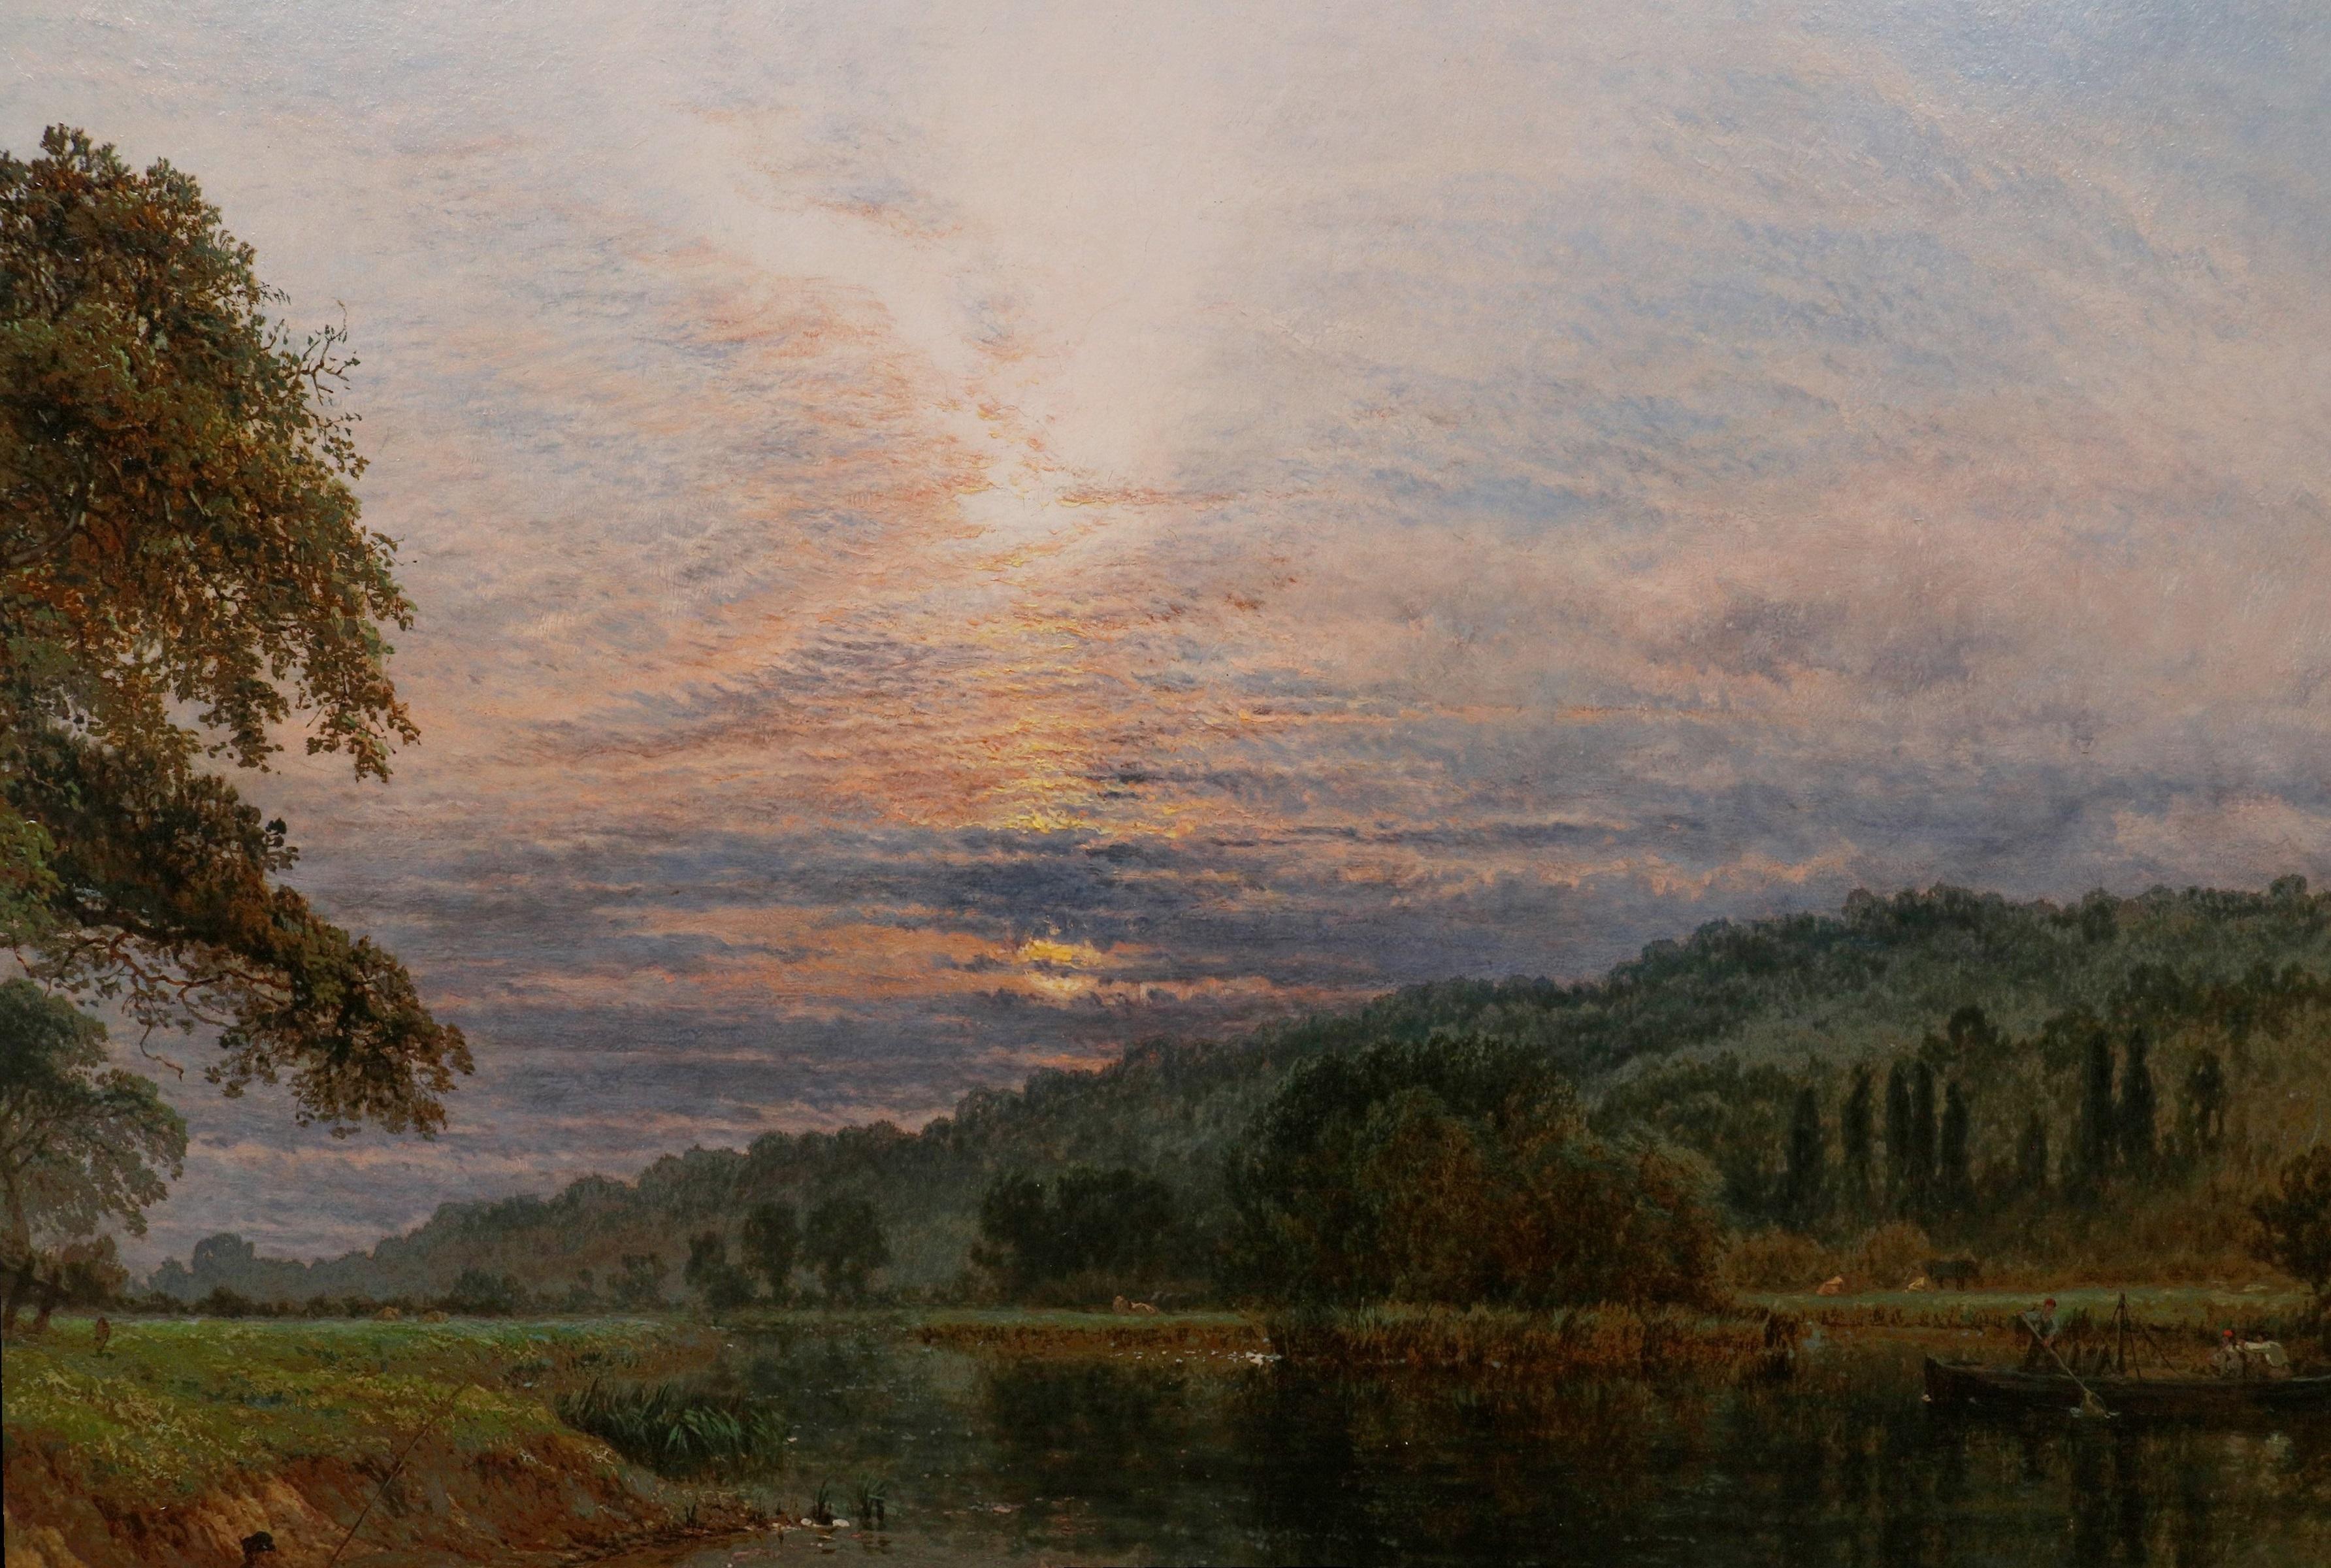 La Tamise près de Runnymede' par Henry Dawson R.B.A. (1811-1878). 

Le tableau - qui représente un pêcheur au bord de la rivière sous un spectaculaire coucher de soleil - est signé par l'artiste et daté de 1863.

Bien qu'il ait été l'élève de James